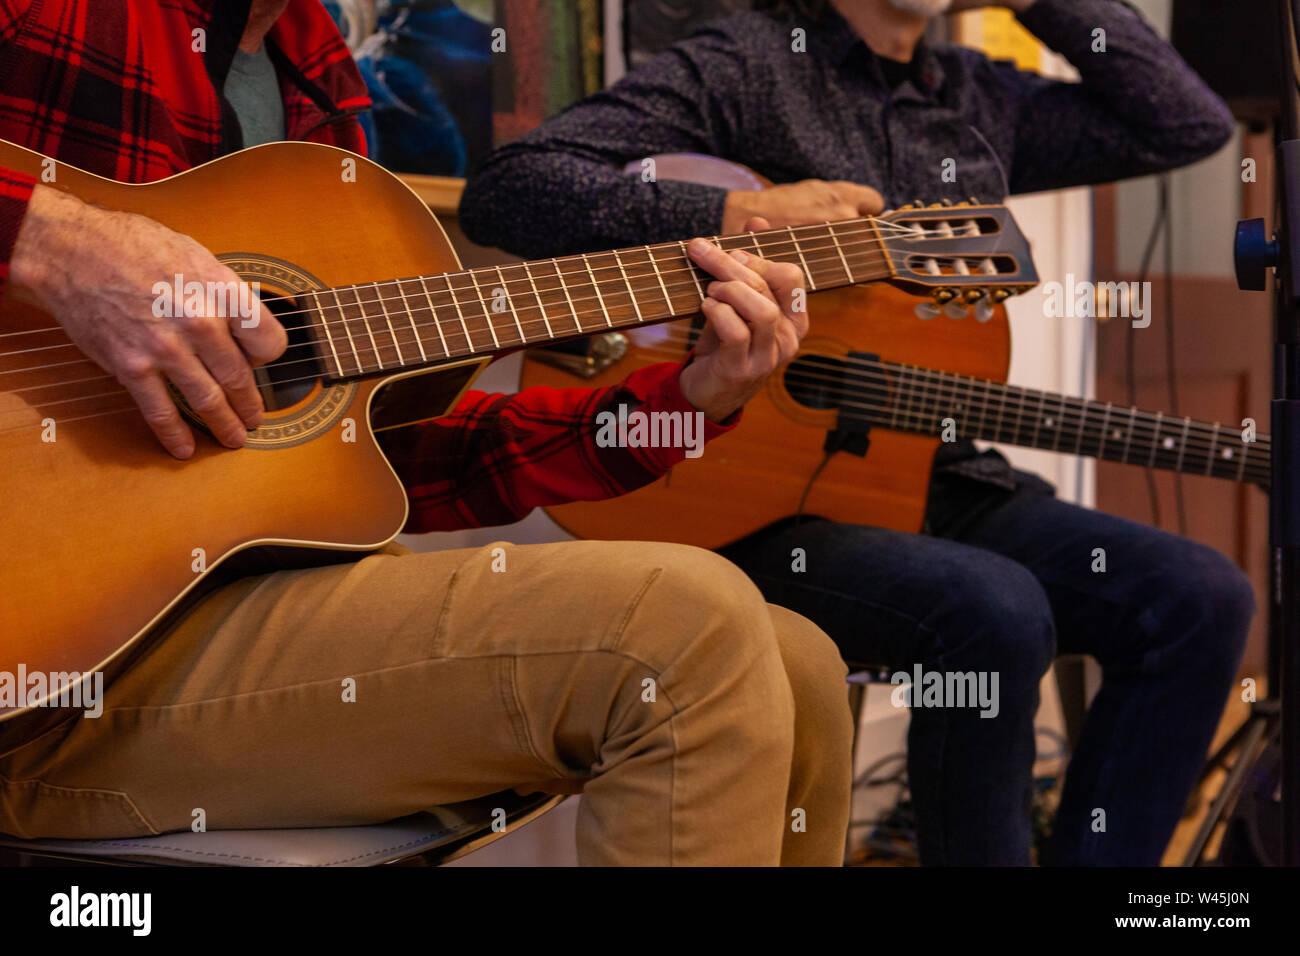 Una vista cercana de las manos de dos guitarristas, ya que realizar una obra musical sentarse adentro, hombres tocando instrumentos de cuerda con copia espacio en la derecha. Foto de stock